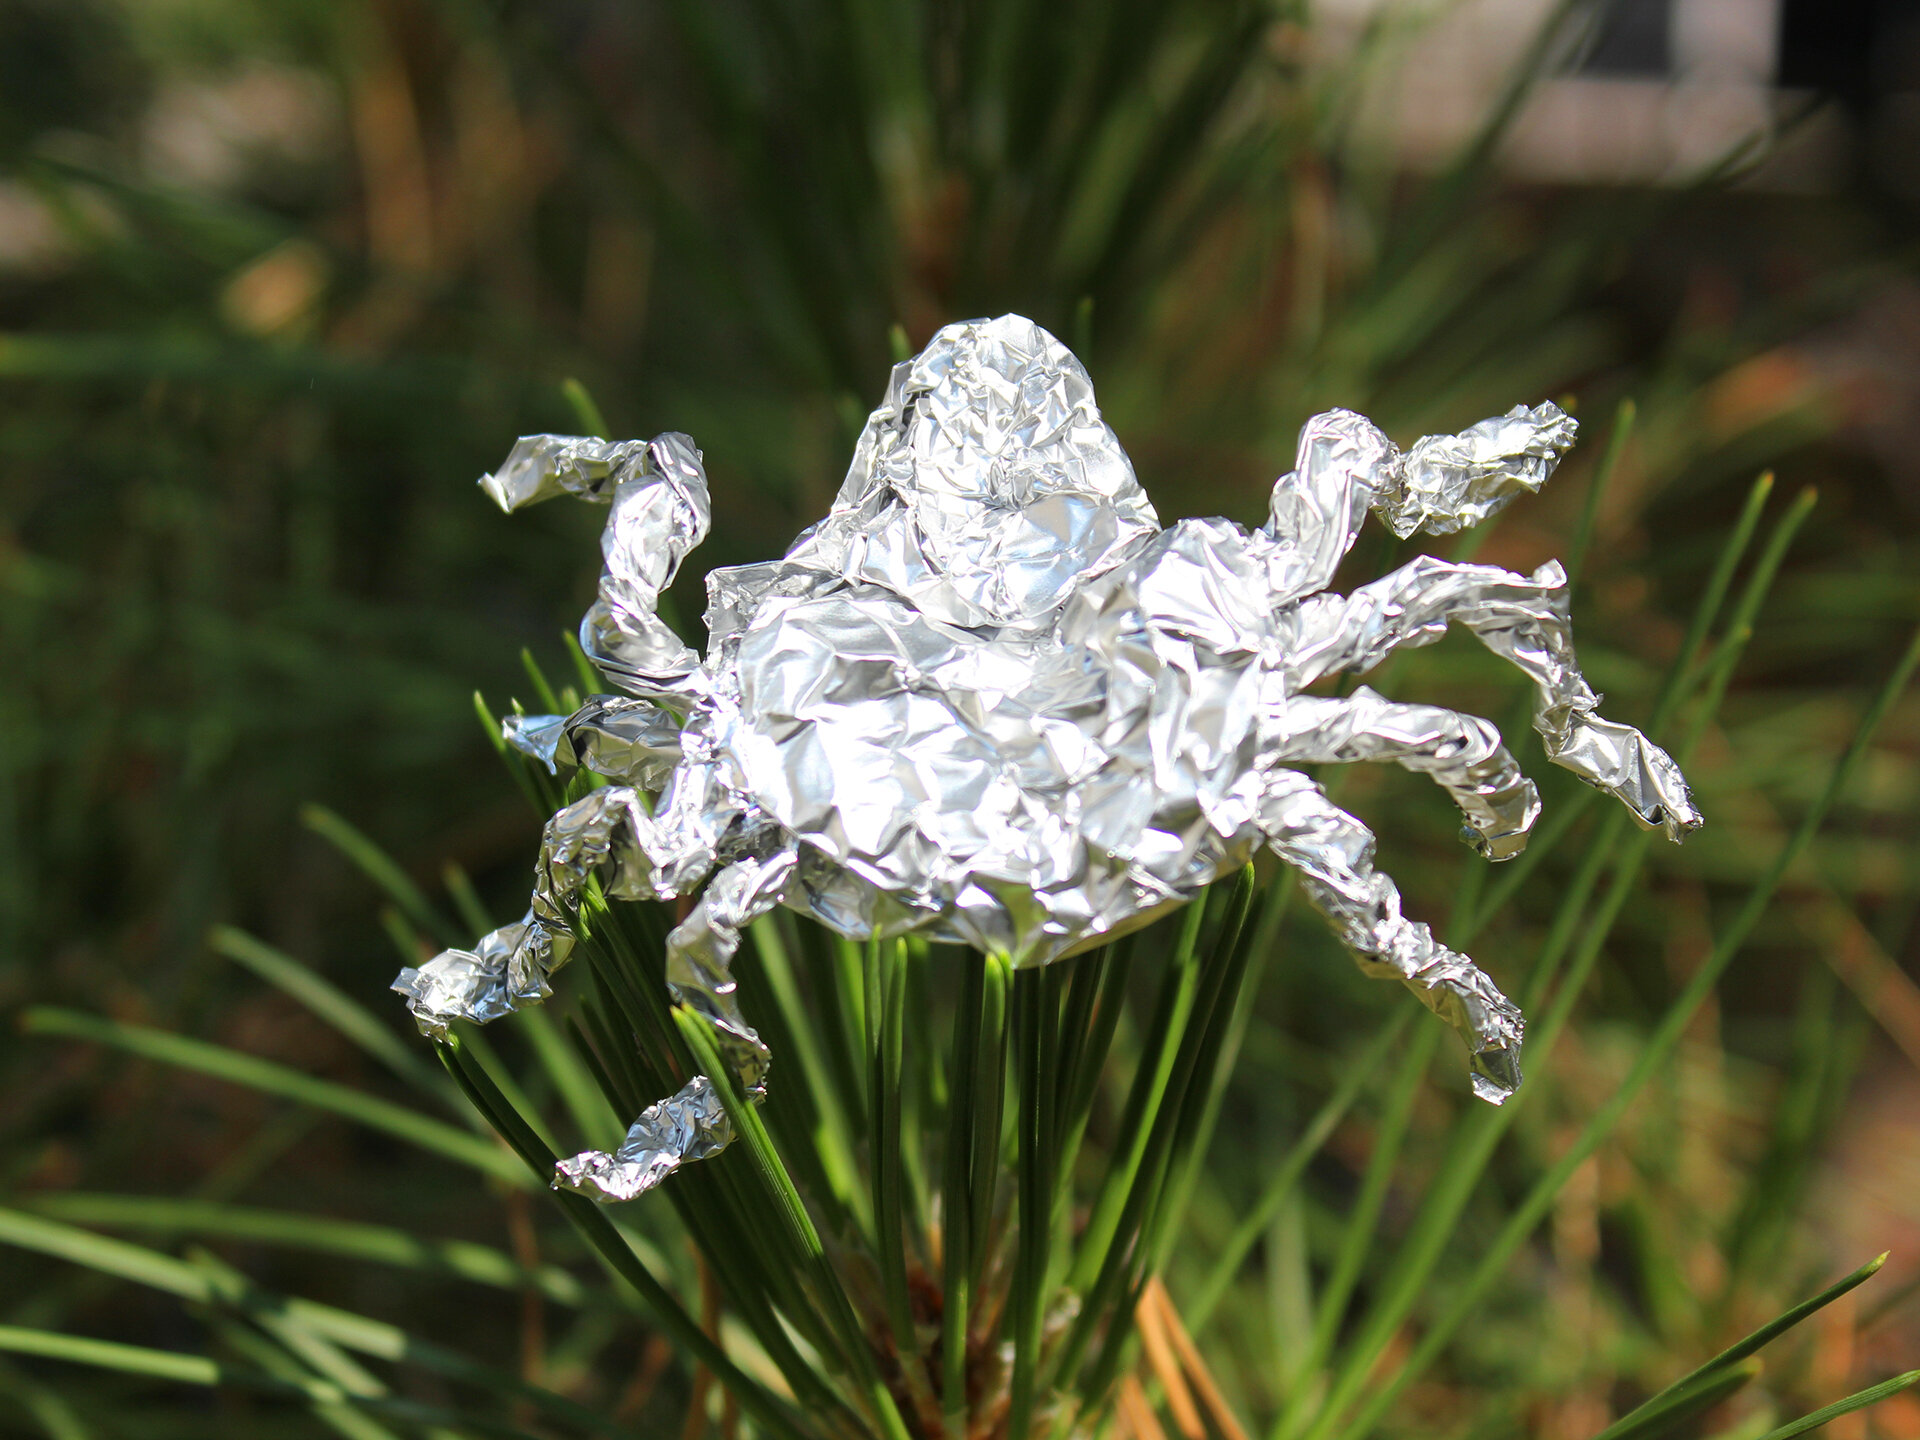 Tin Foil Spider On Leaf 04